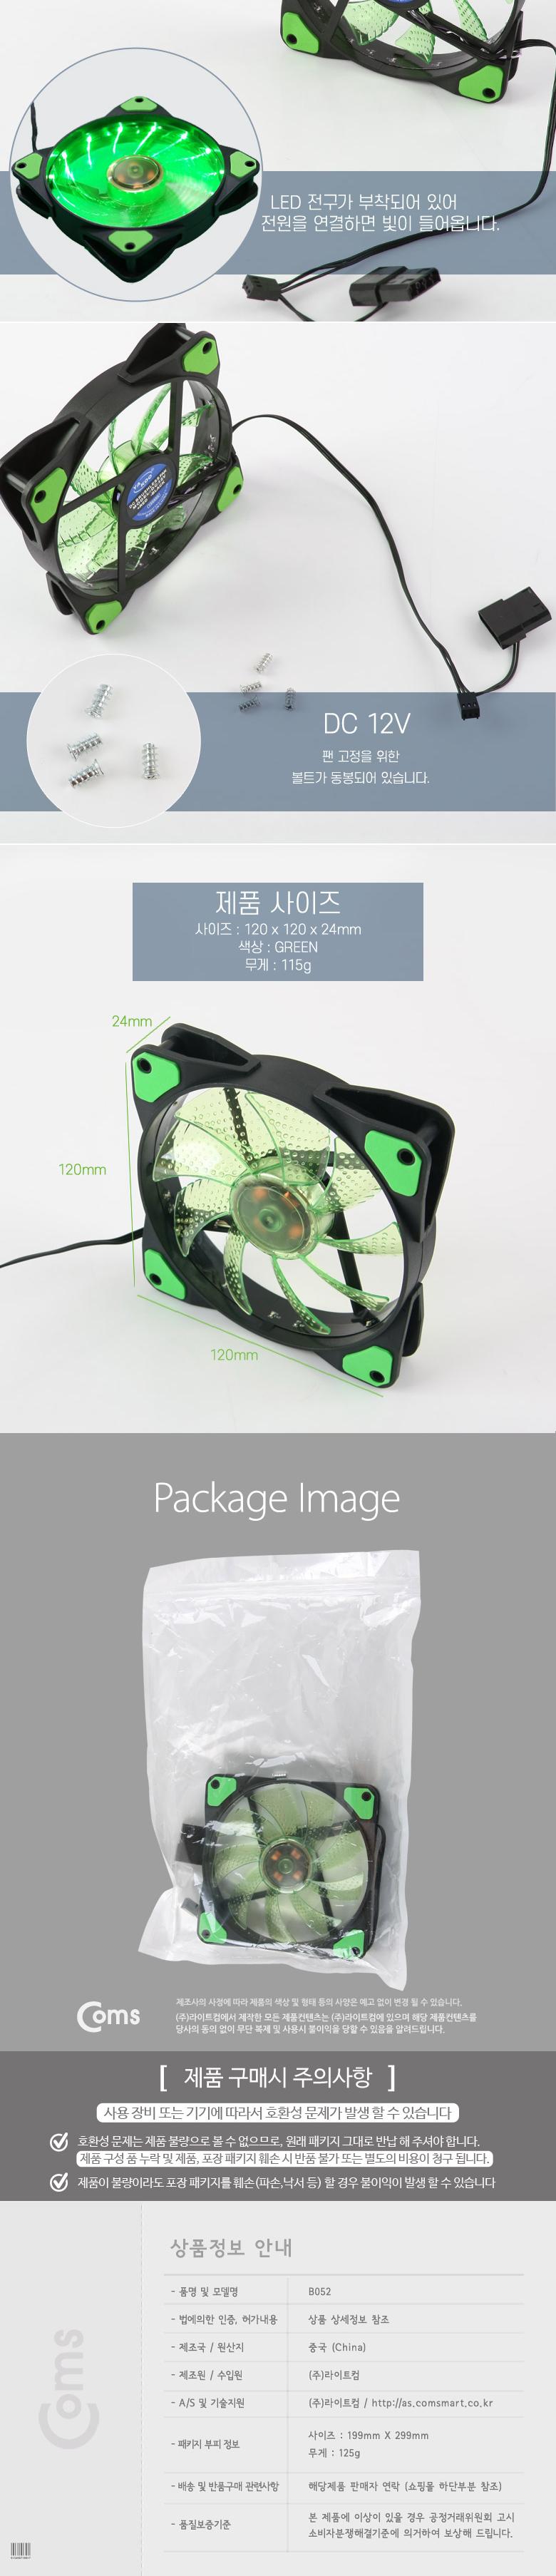 Coms  ̽ CASE (120mm) Green (Green LED) ǻͺǰ ǻͿǰ ð  ǻֺǰ